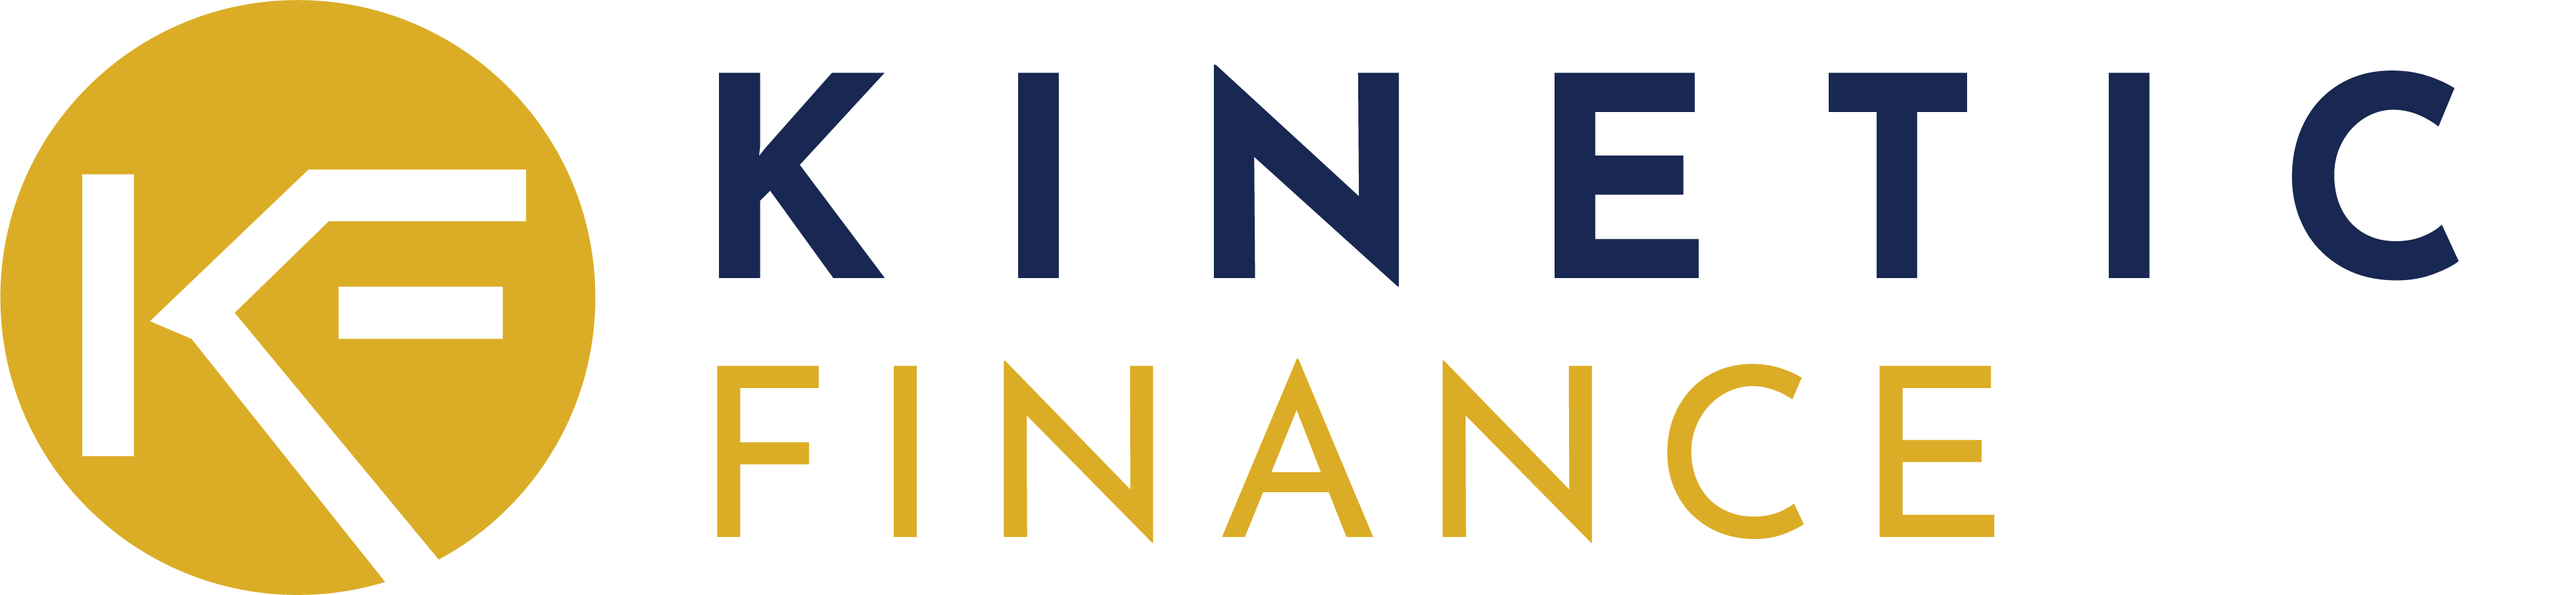 Kinetic Finance Ltd